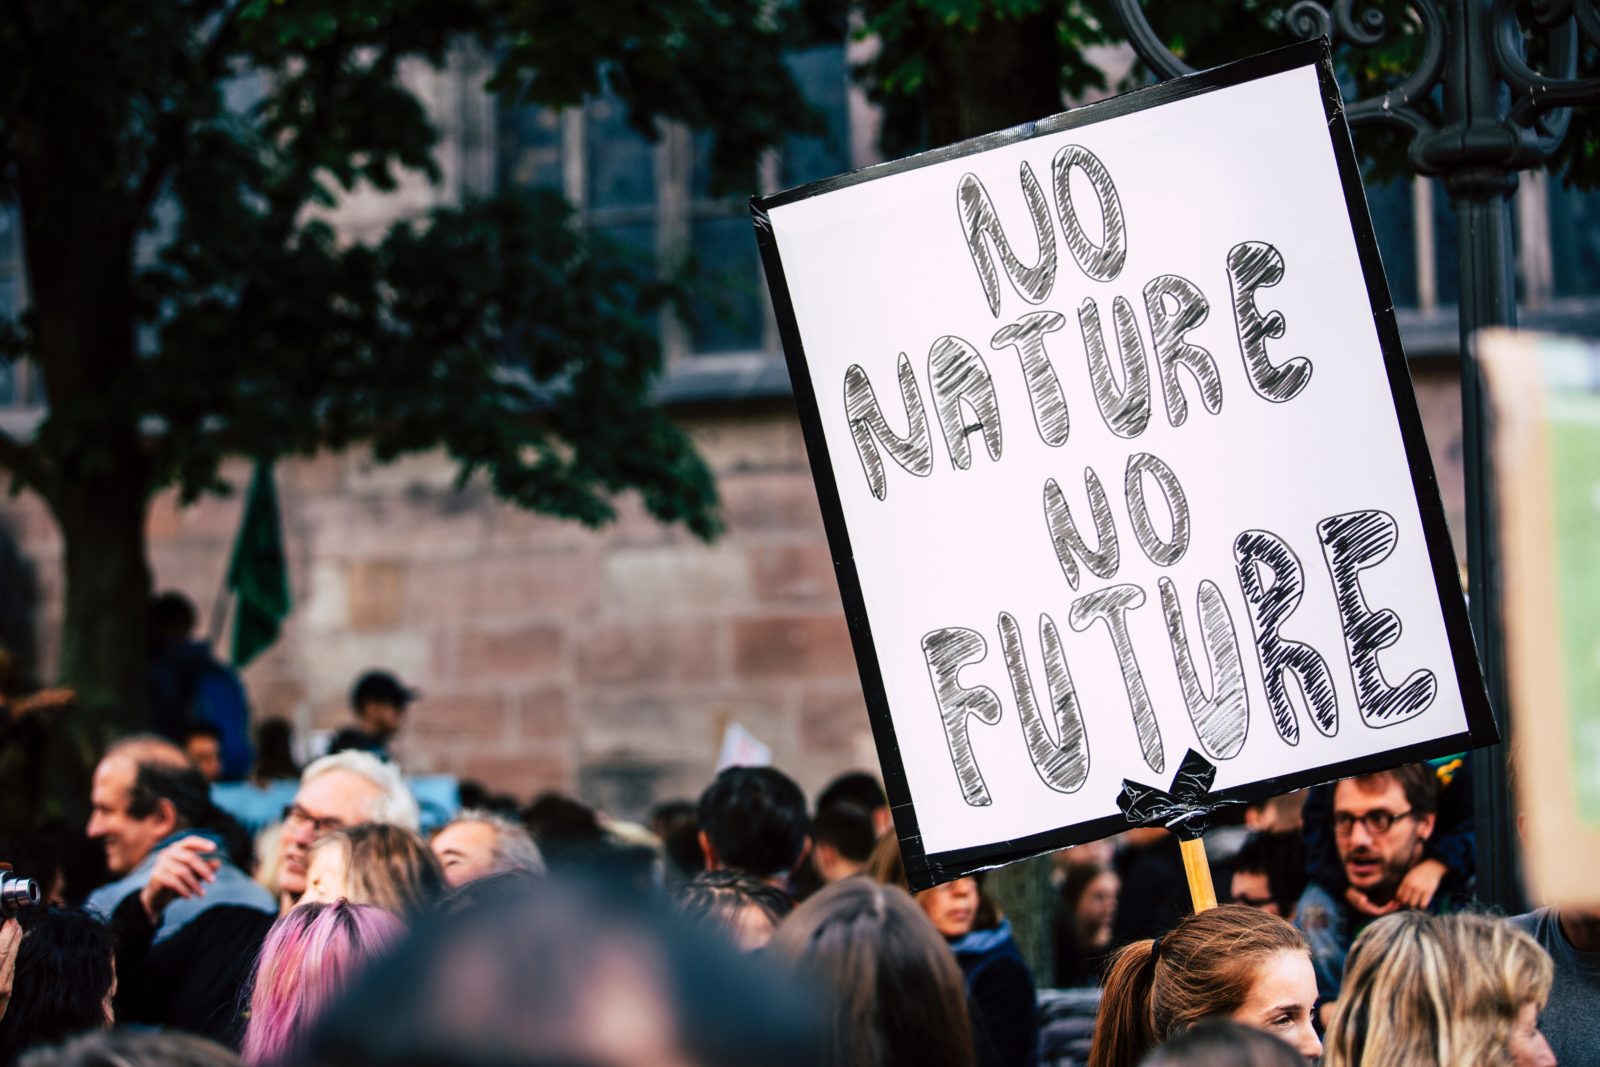 Klimastreik mit vielen Köpfen von Menschen im Hintergrund. Zentral ist ein Plakat mit der Aufschrift "NO NATURE NO FUTURE" zu sehen. Also ungefähr übersetzt "ohne Natur keine Zukunft." 